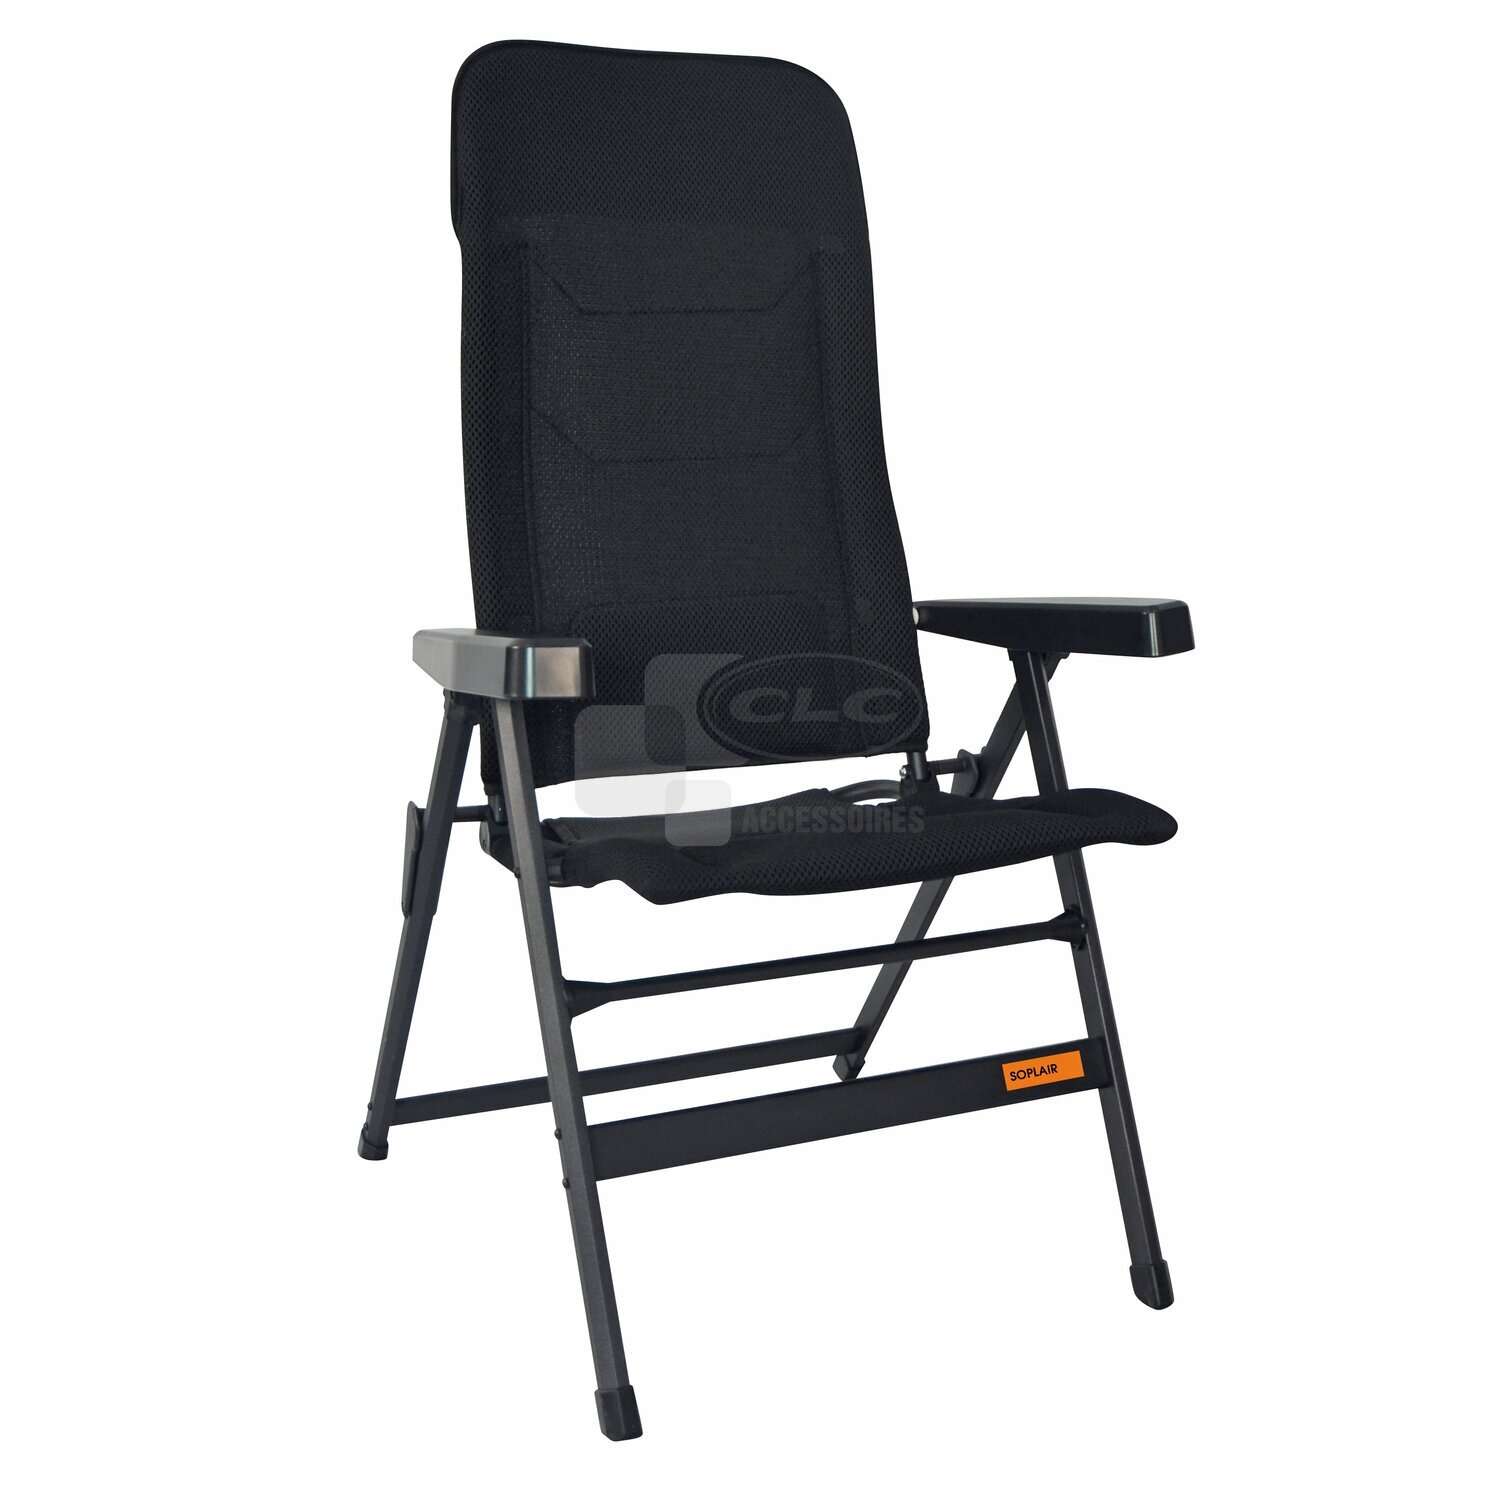 Chaise longue Relax chaise solaire 120kg Chair Chaise confortable pliable  en bois noir Avec mains courantes 2 pièces